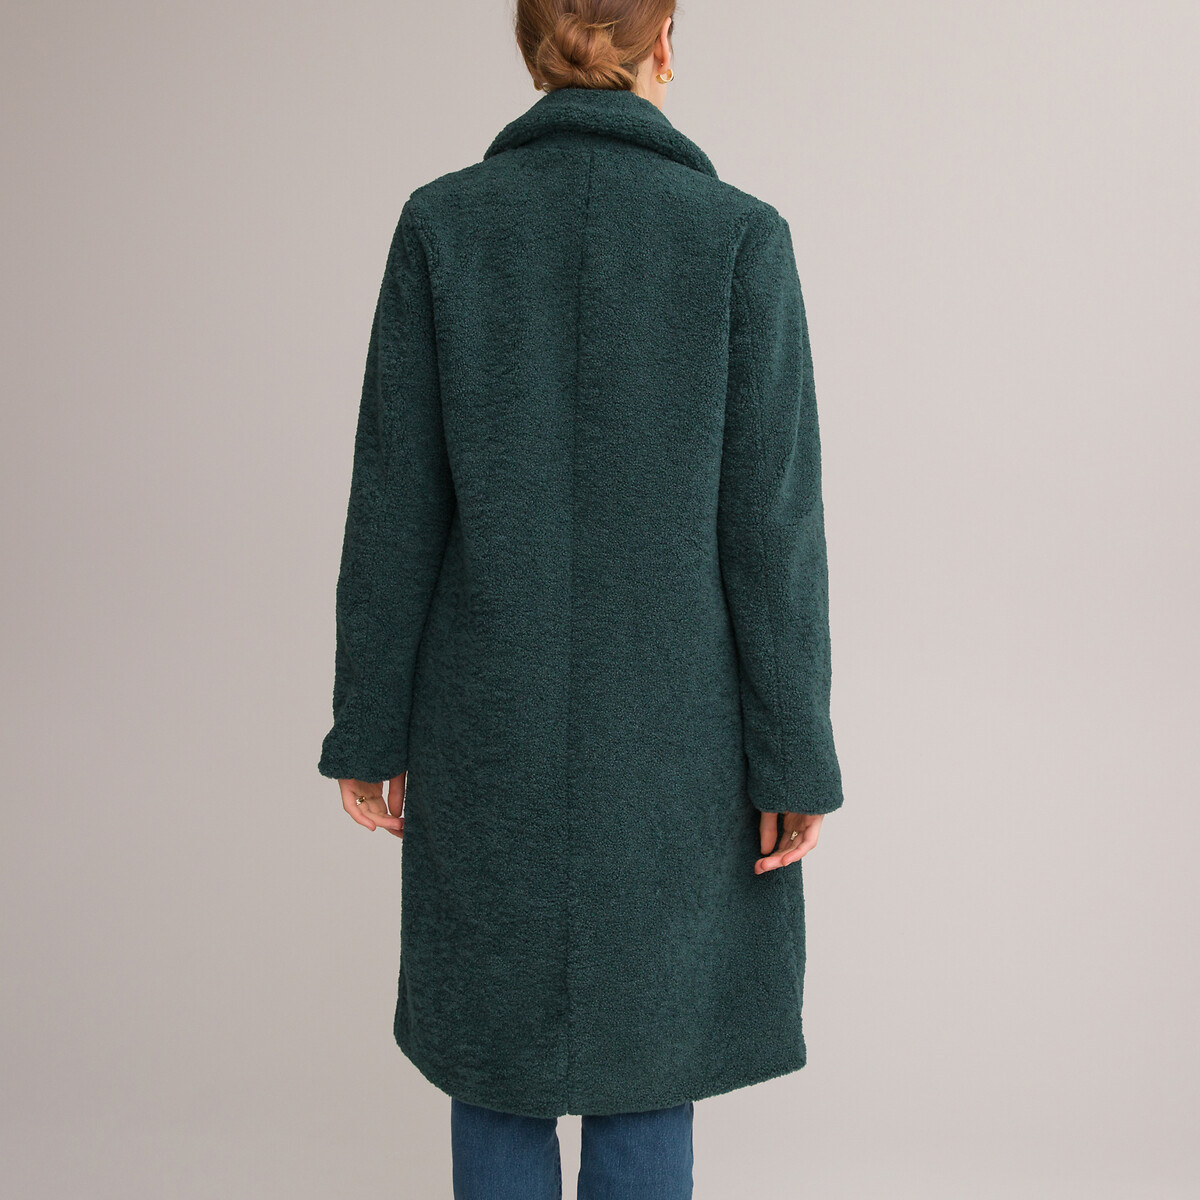 Пальто Средней длины с застежкой на пуговицы 38 (FR) - 44 (RUS) зеленый LaRedoute, размер 38 (FR) - 44 (RUS) Пальто Средней длины с застежкой на пуговицы 38 (FR) - 44 (RUS) зеленый - фото 4